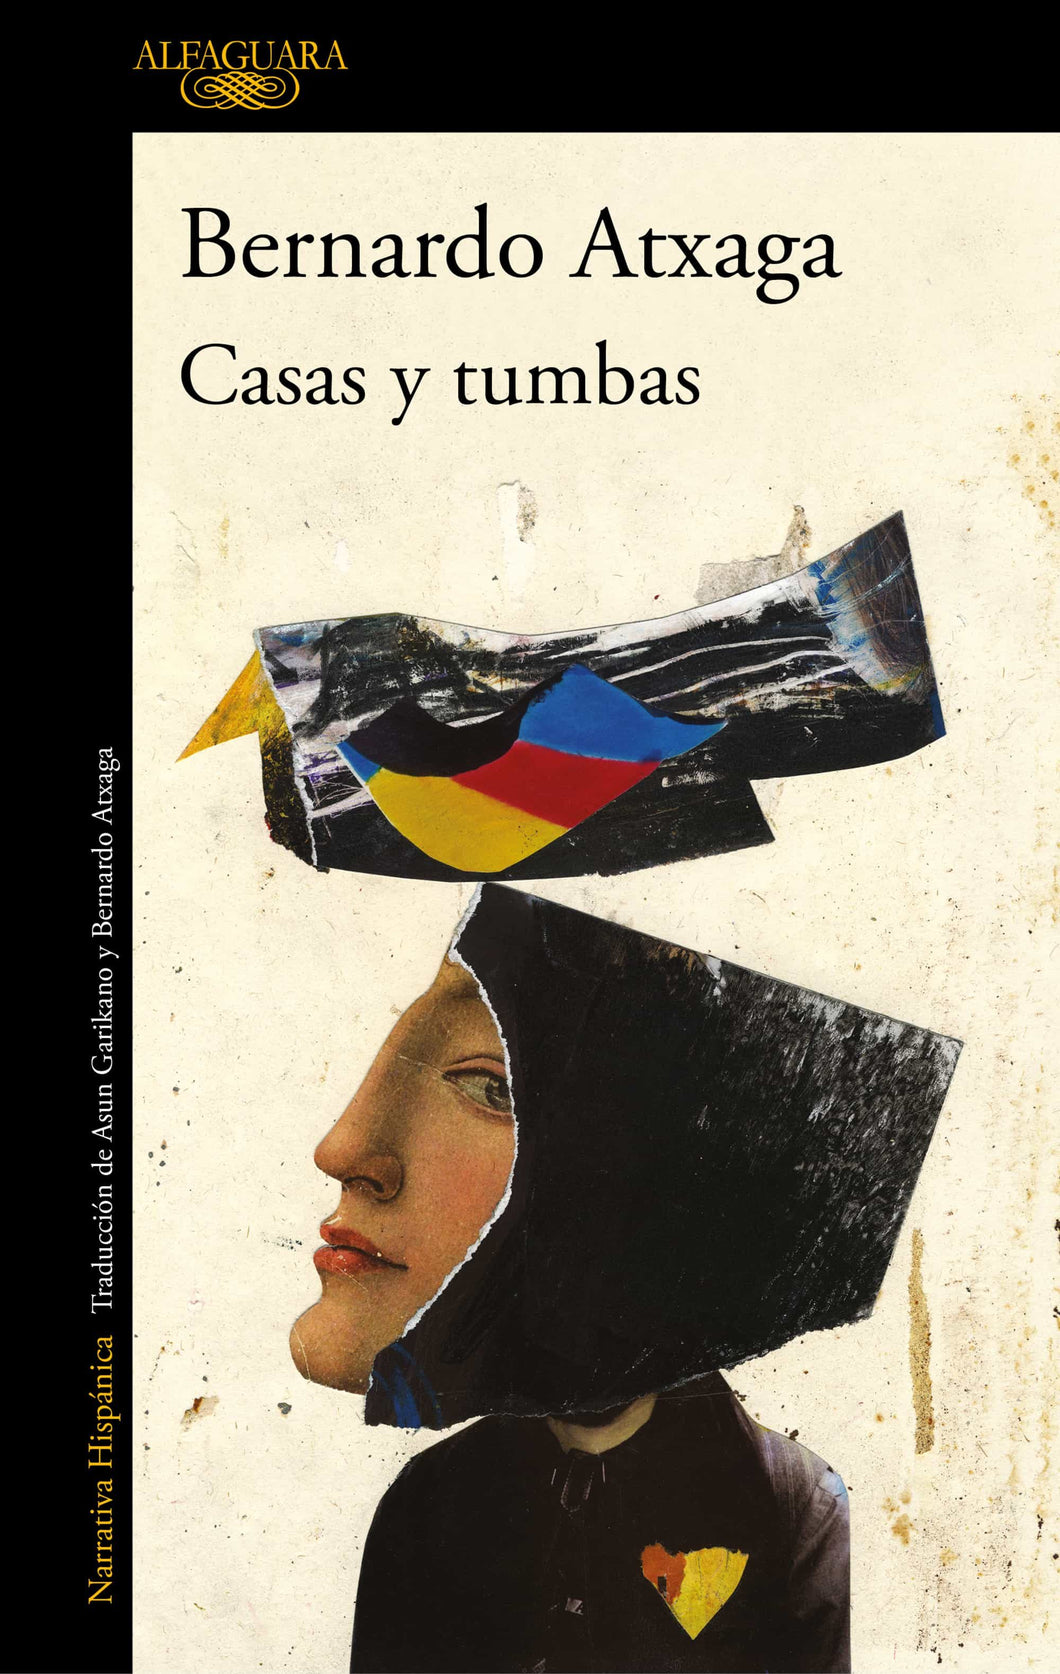 CASAS Y TUMBAS - Bernardo Atxaga